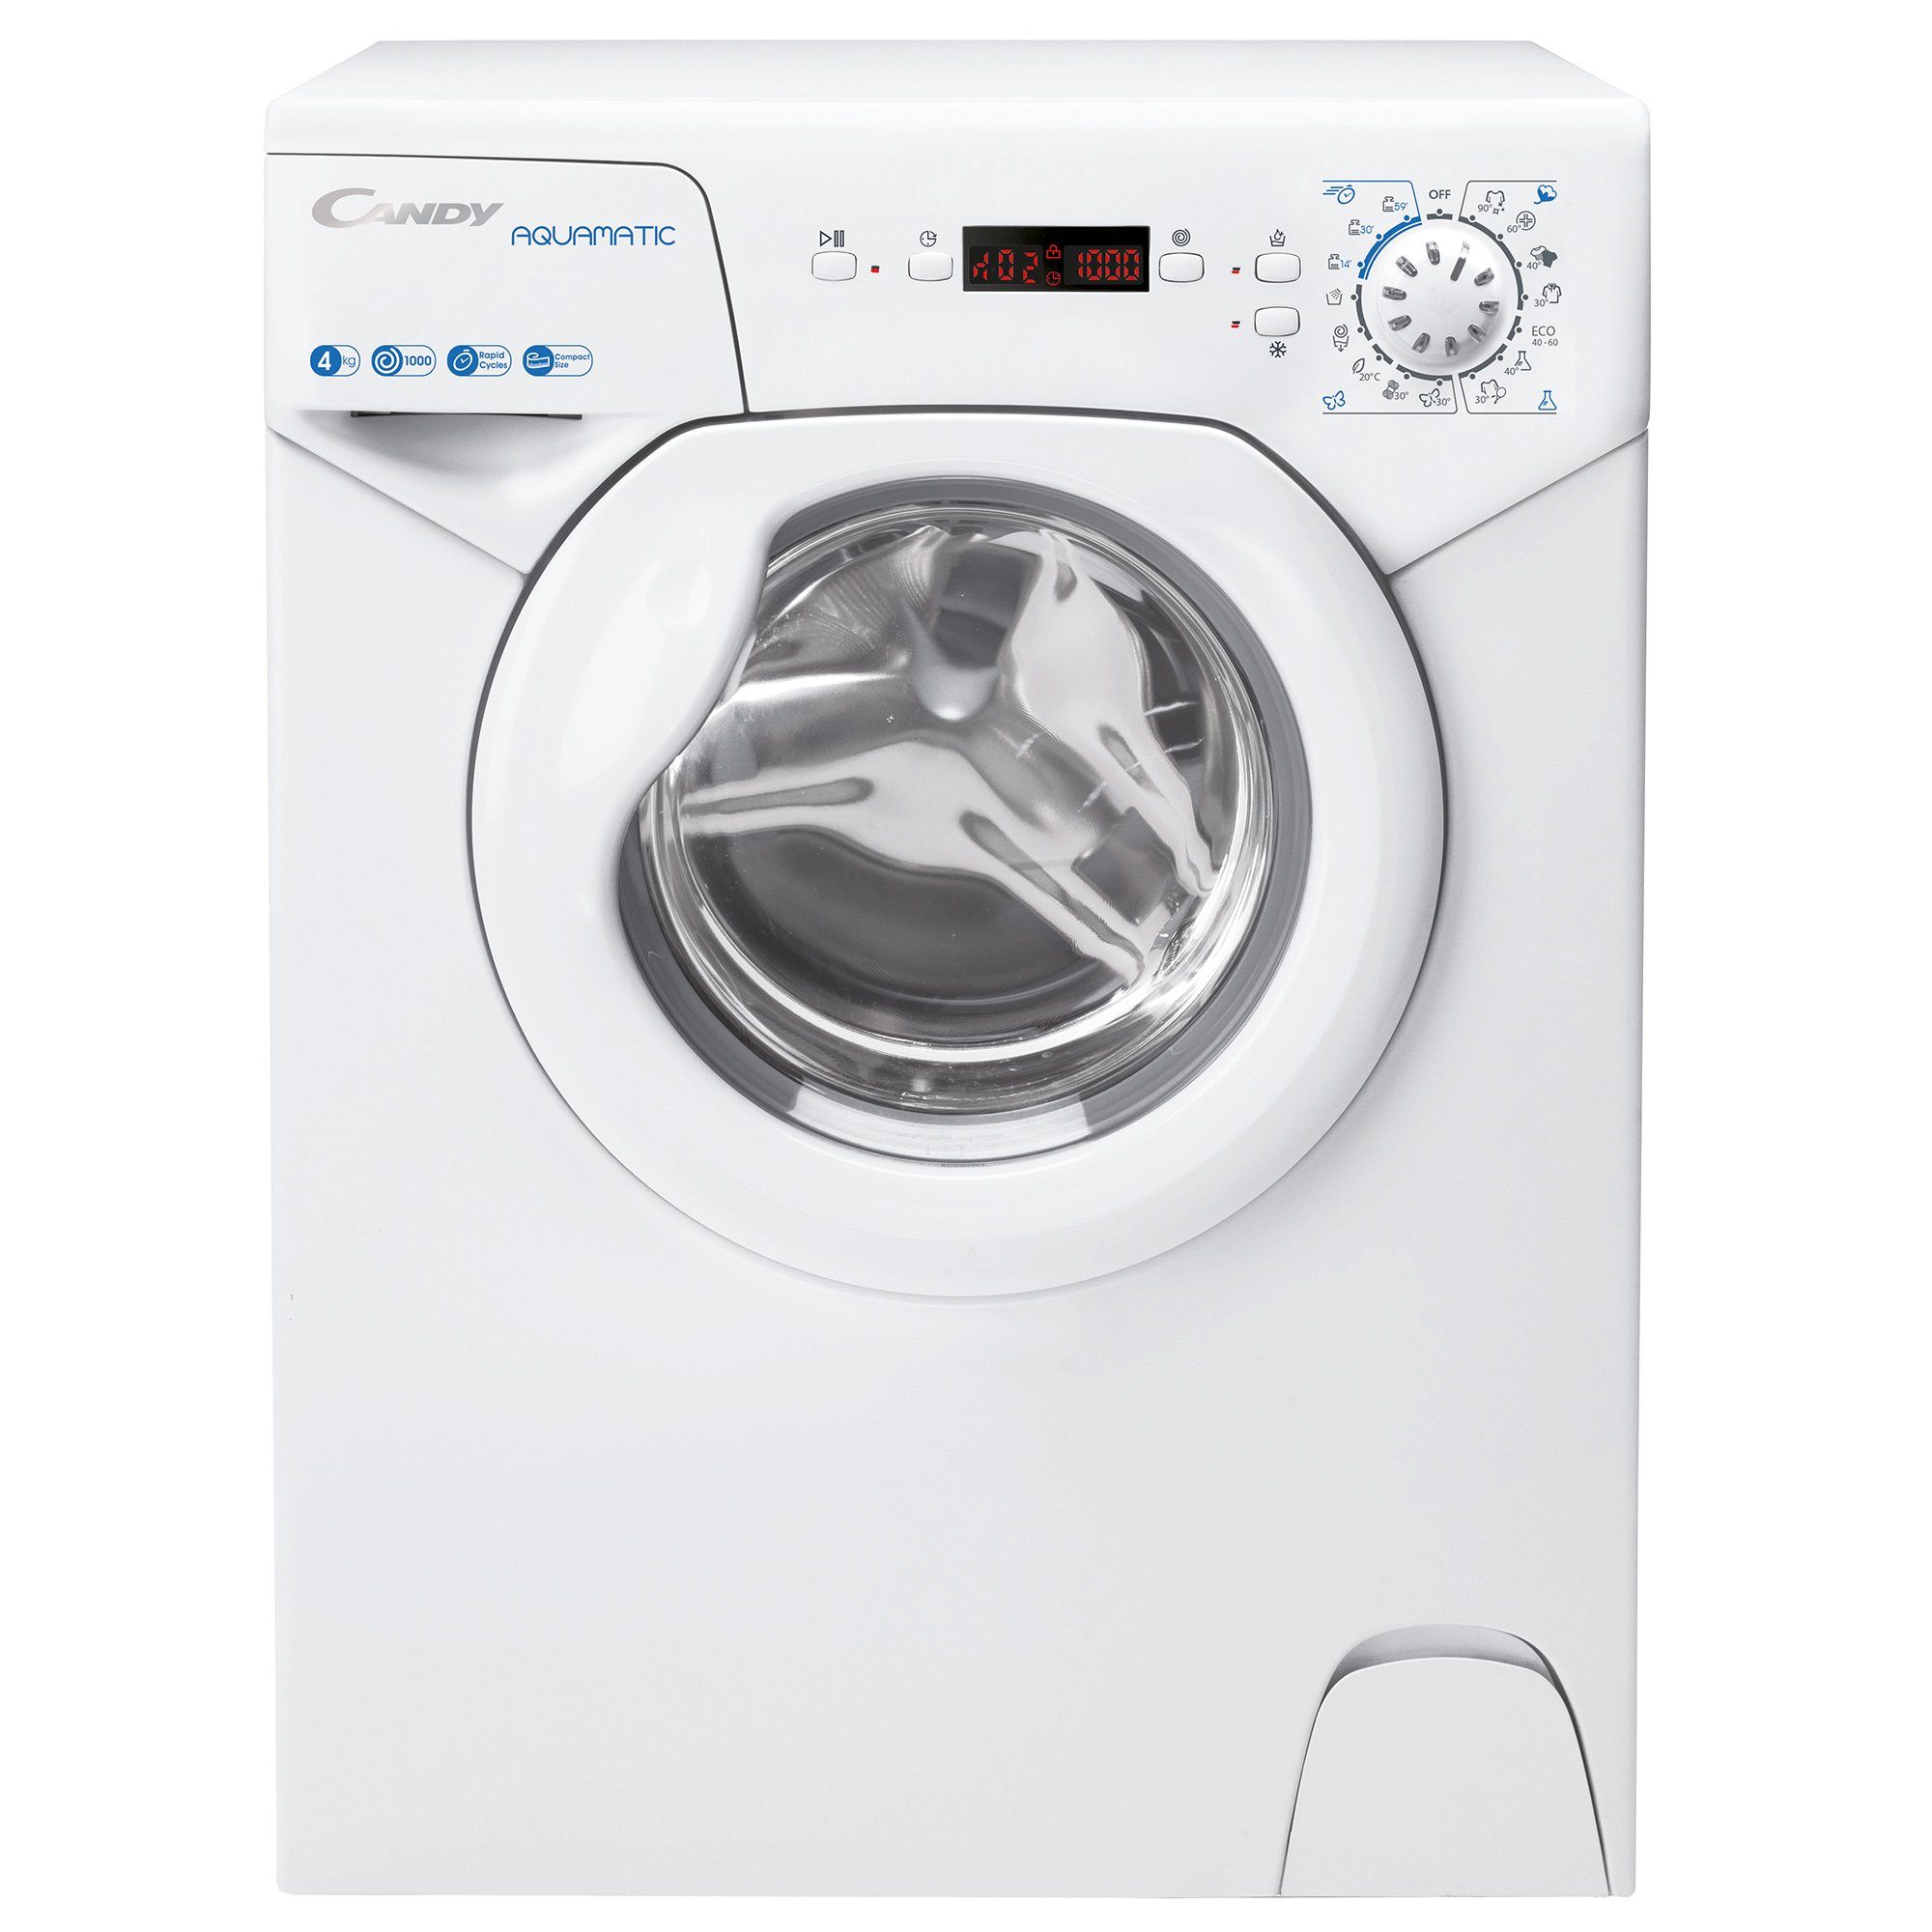 Candy Waschmaschine AQUA 1142DE/2-S, Symbolblende online kaufen | OTTO